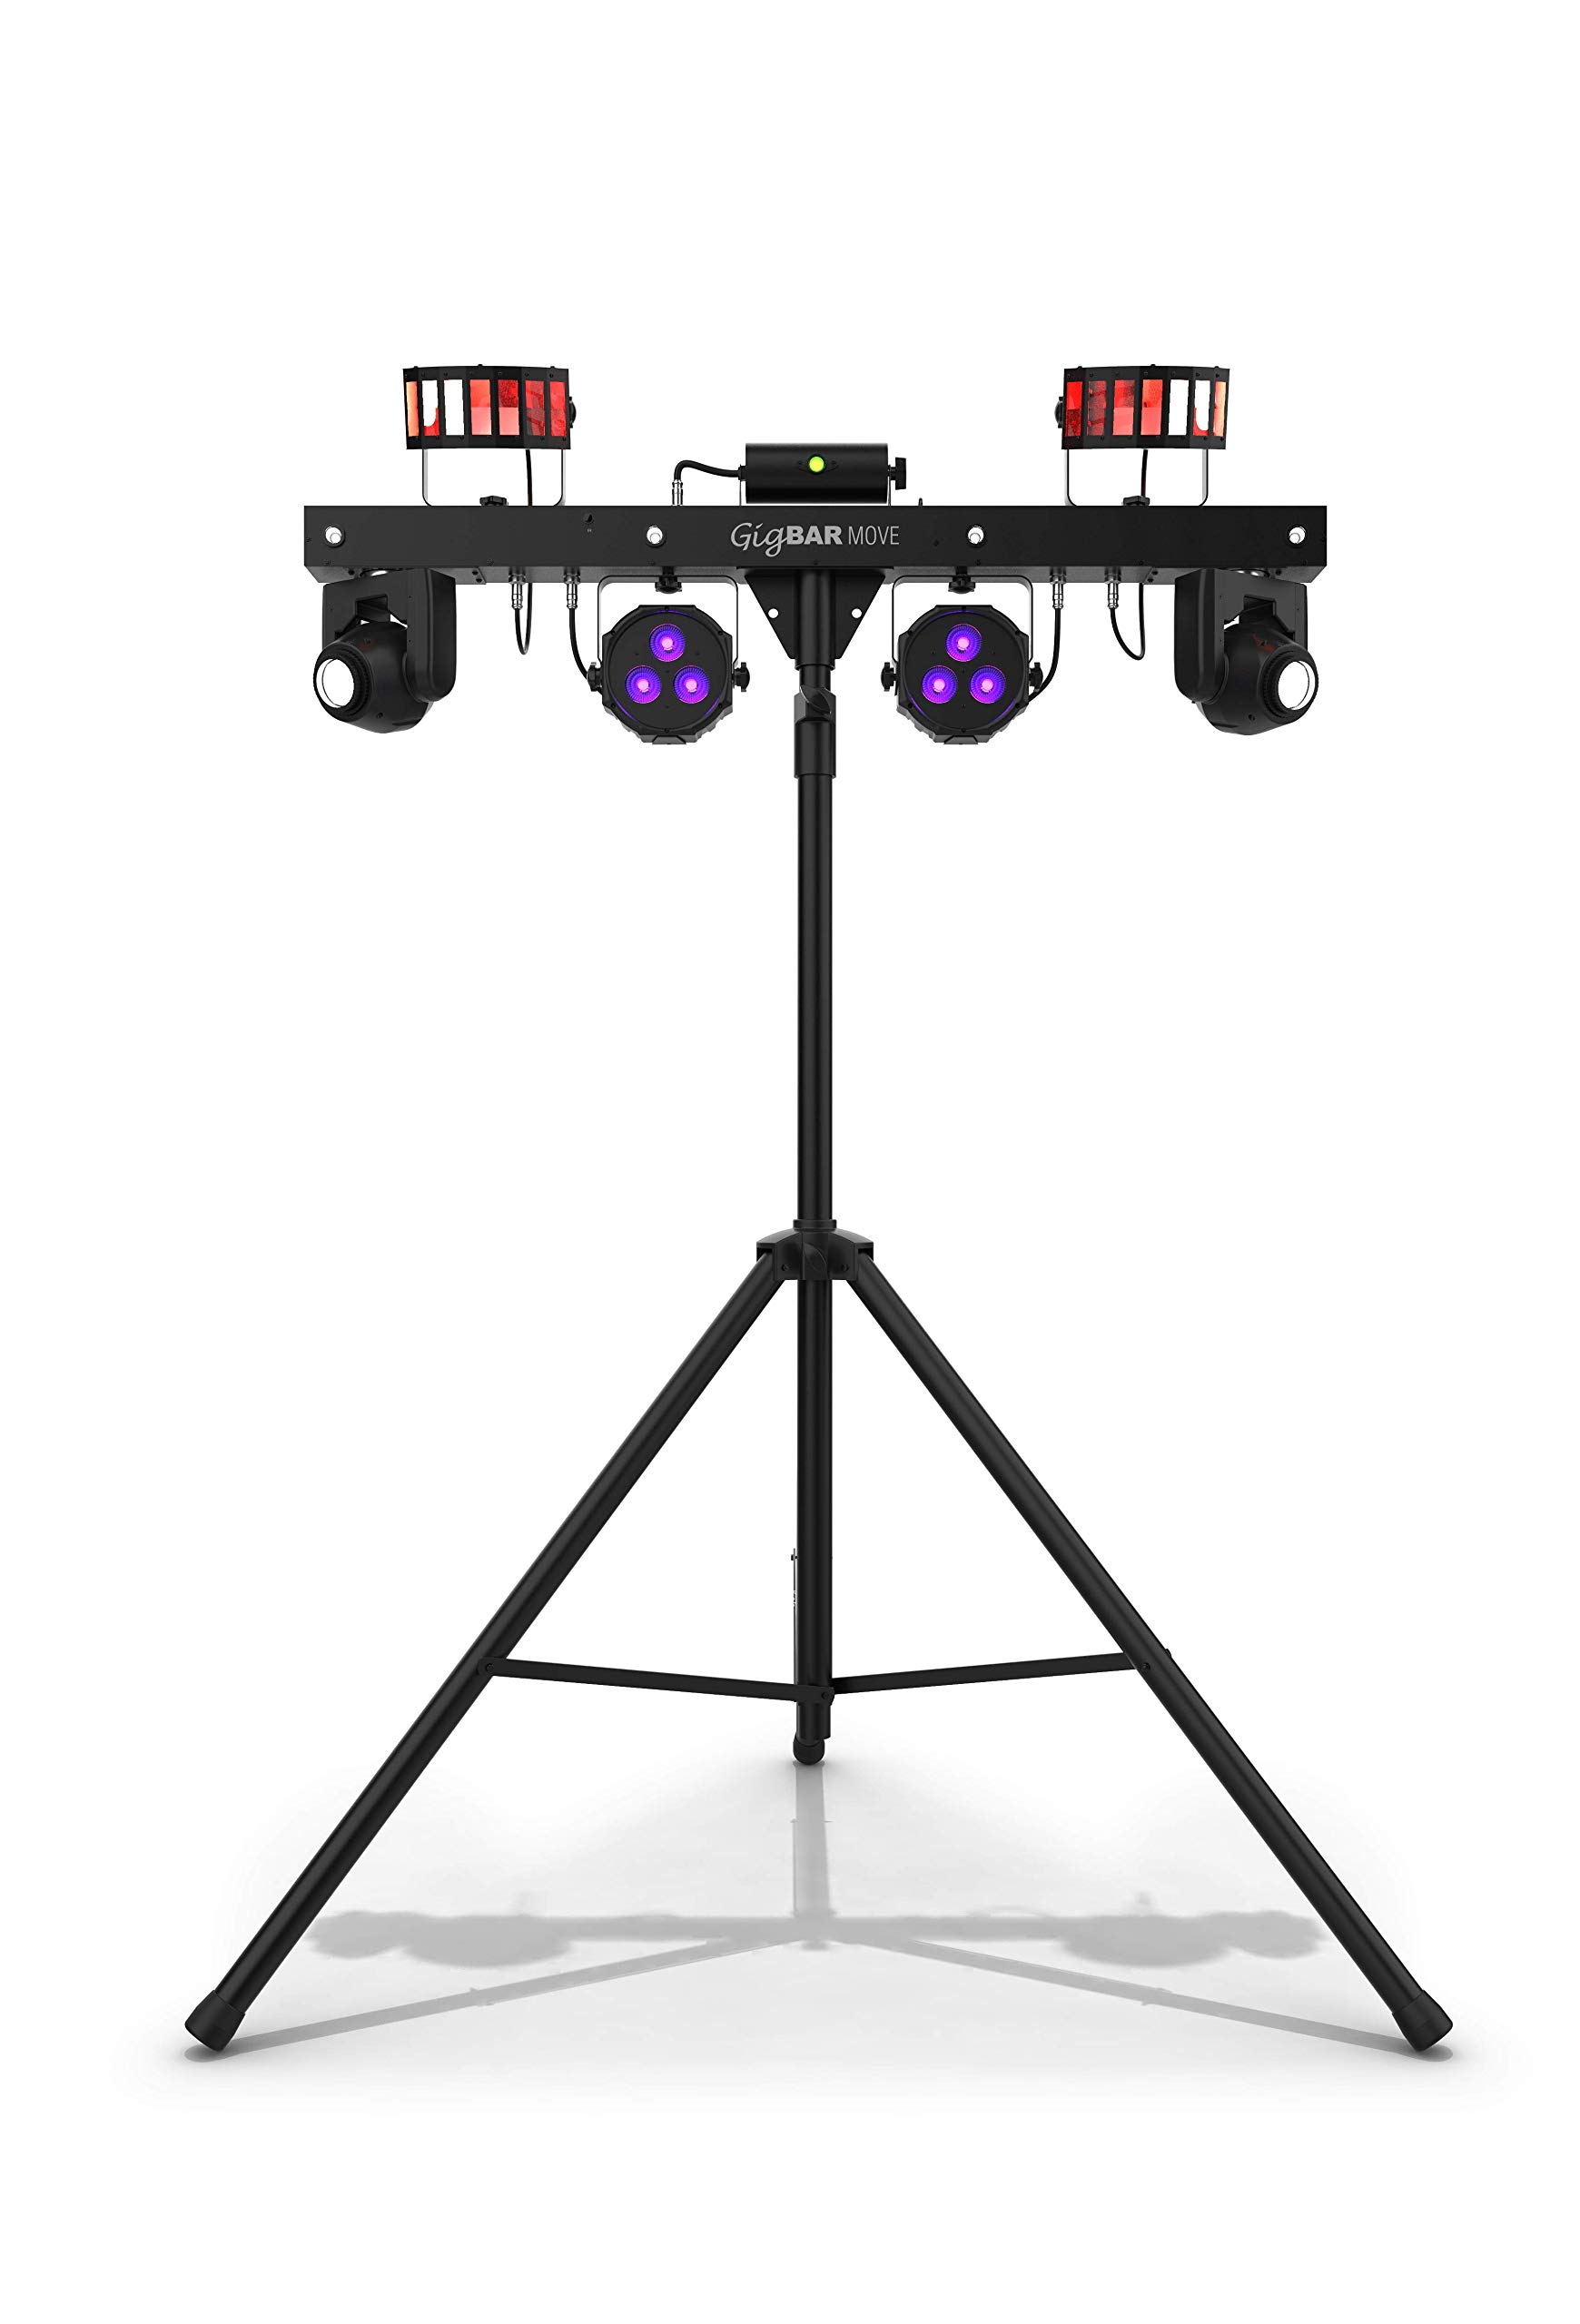 Chauvet Sistema de iluminação DJ GigBAR MOVE 5 em 1 com fones de ouvido sem fio